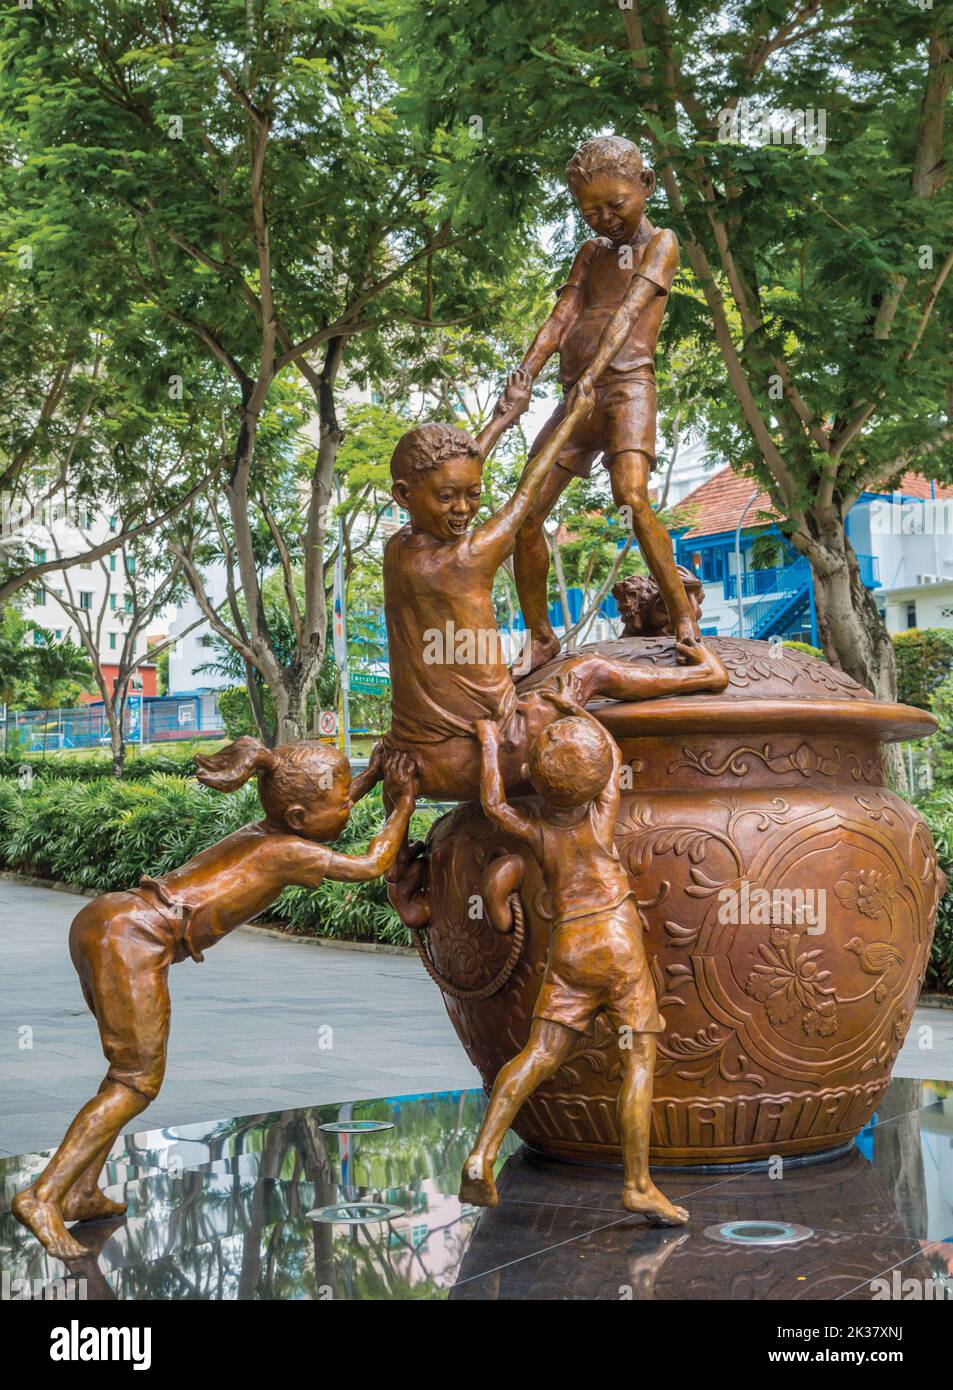 Budak-Budak, o Bambini. Pioniere della nuova generazione. Scultura in bronzo dell'artista singaporiano Chong Fah Cheong, nata nel 1946. Repubblica di Singapore Foto Stock